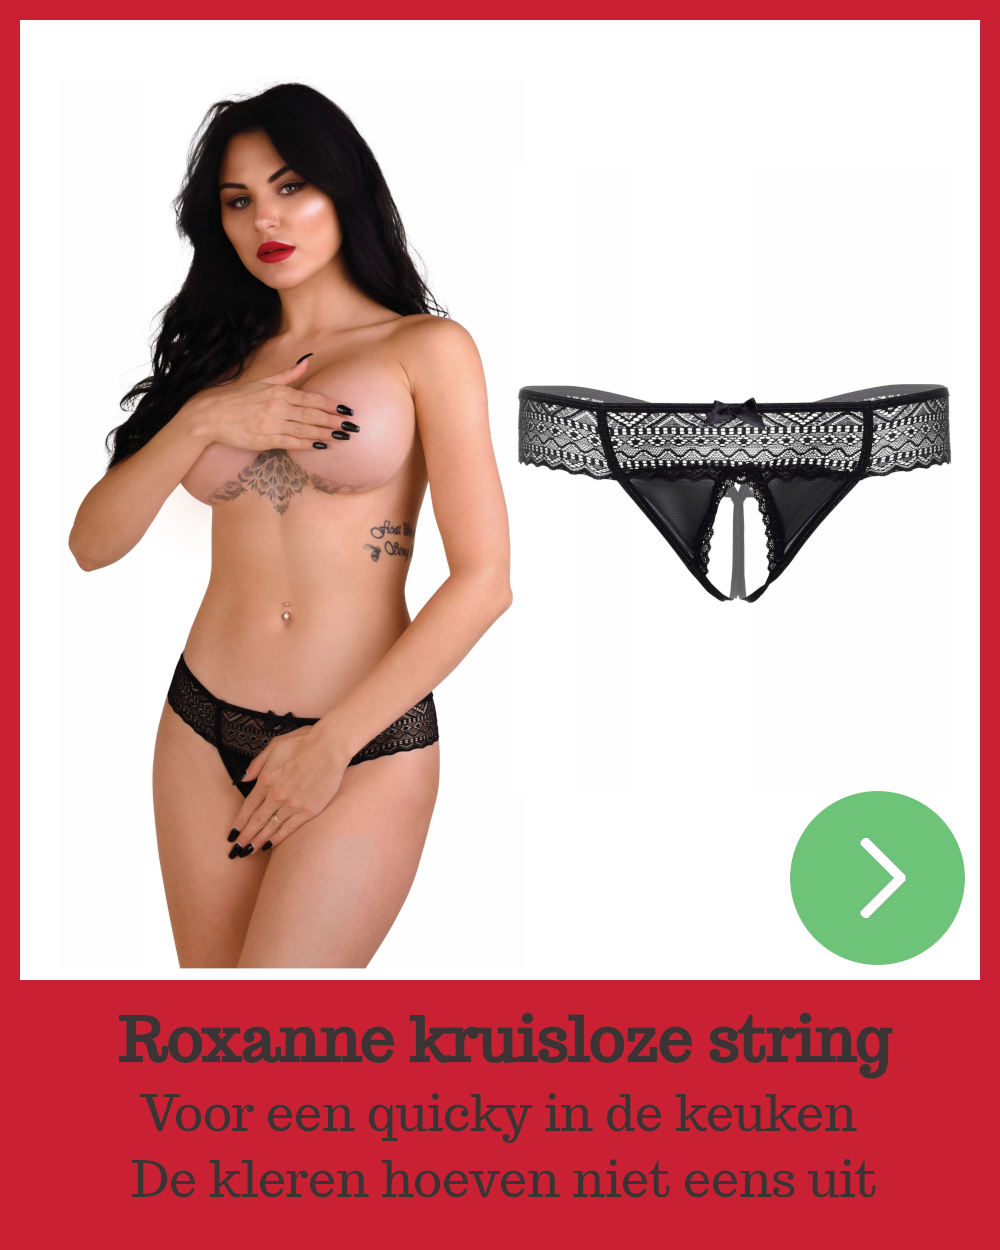 Roxanne: Kruisloze string